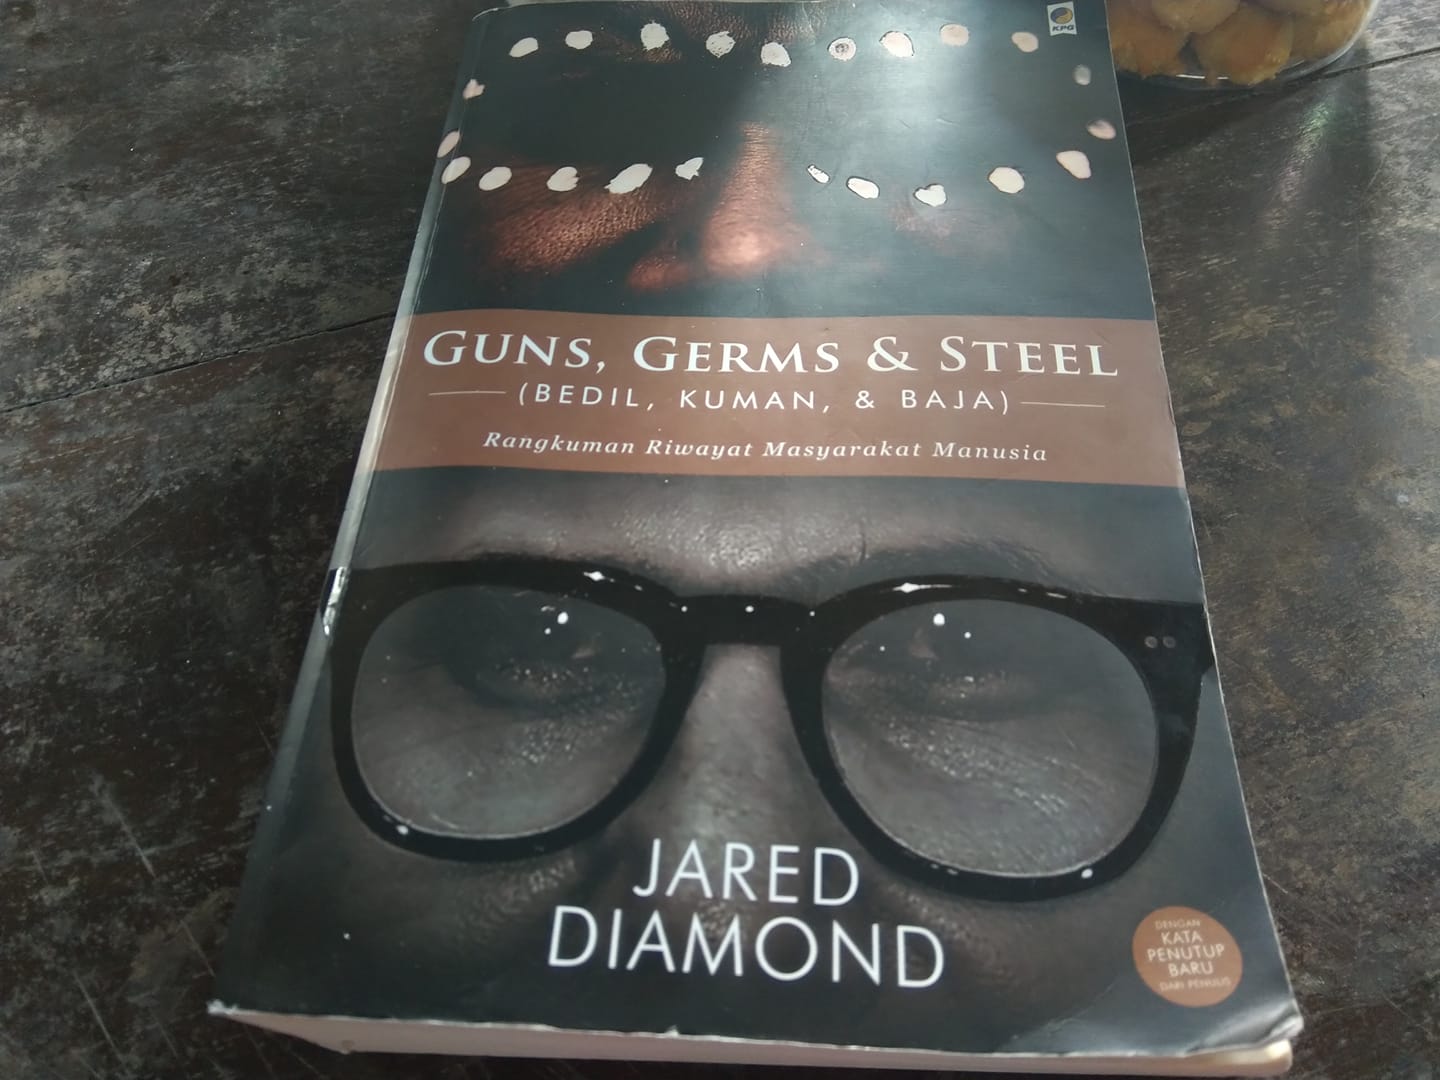 Menjelajah Dunia bersama Jared Diamond dalam Bedil, Kuman & Baja